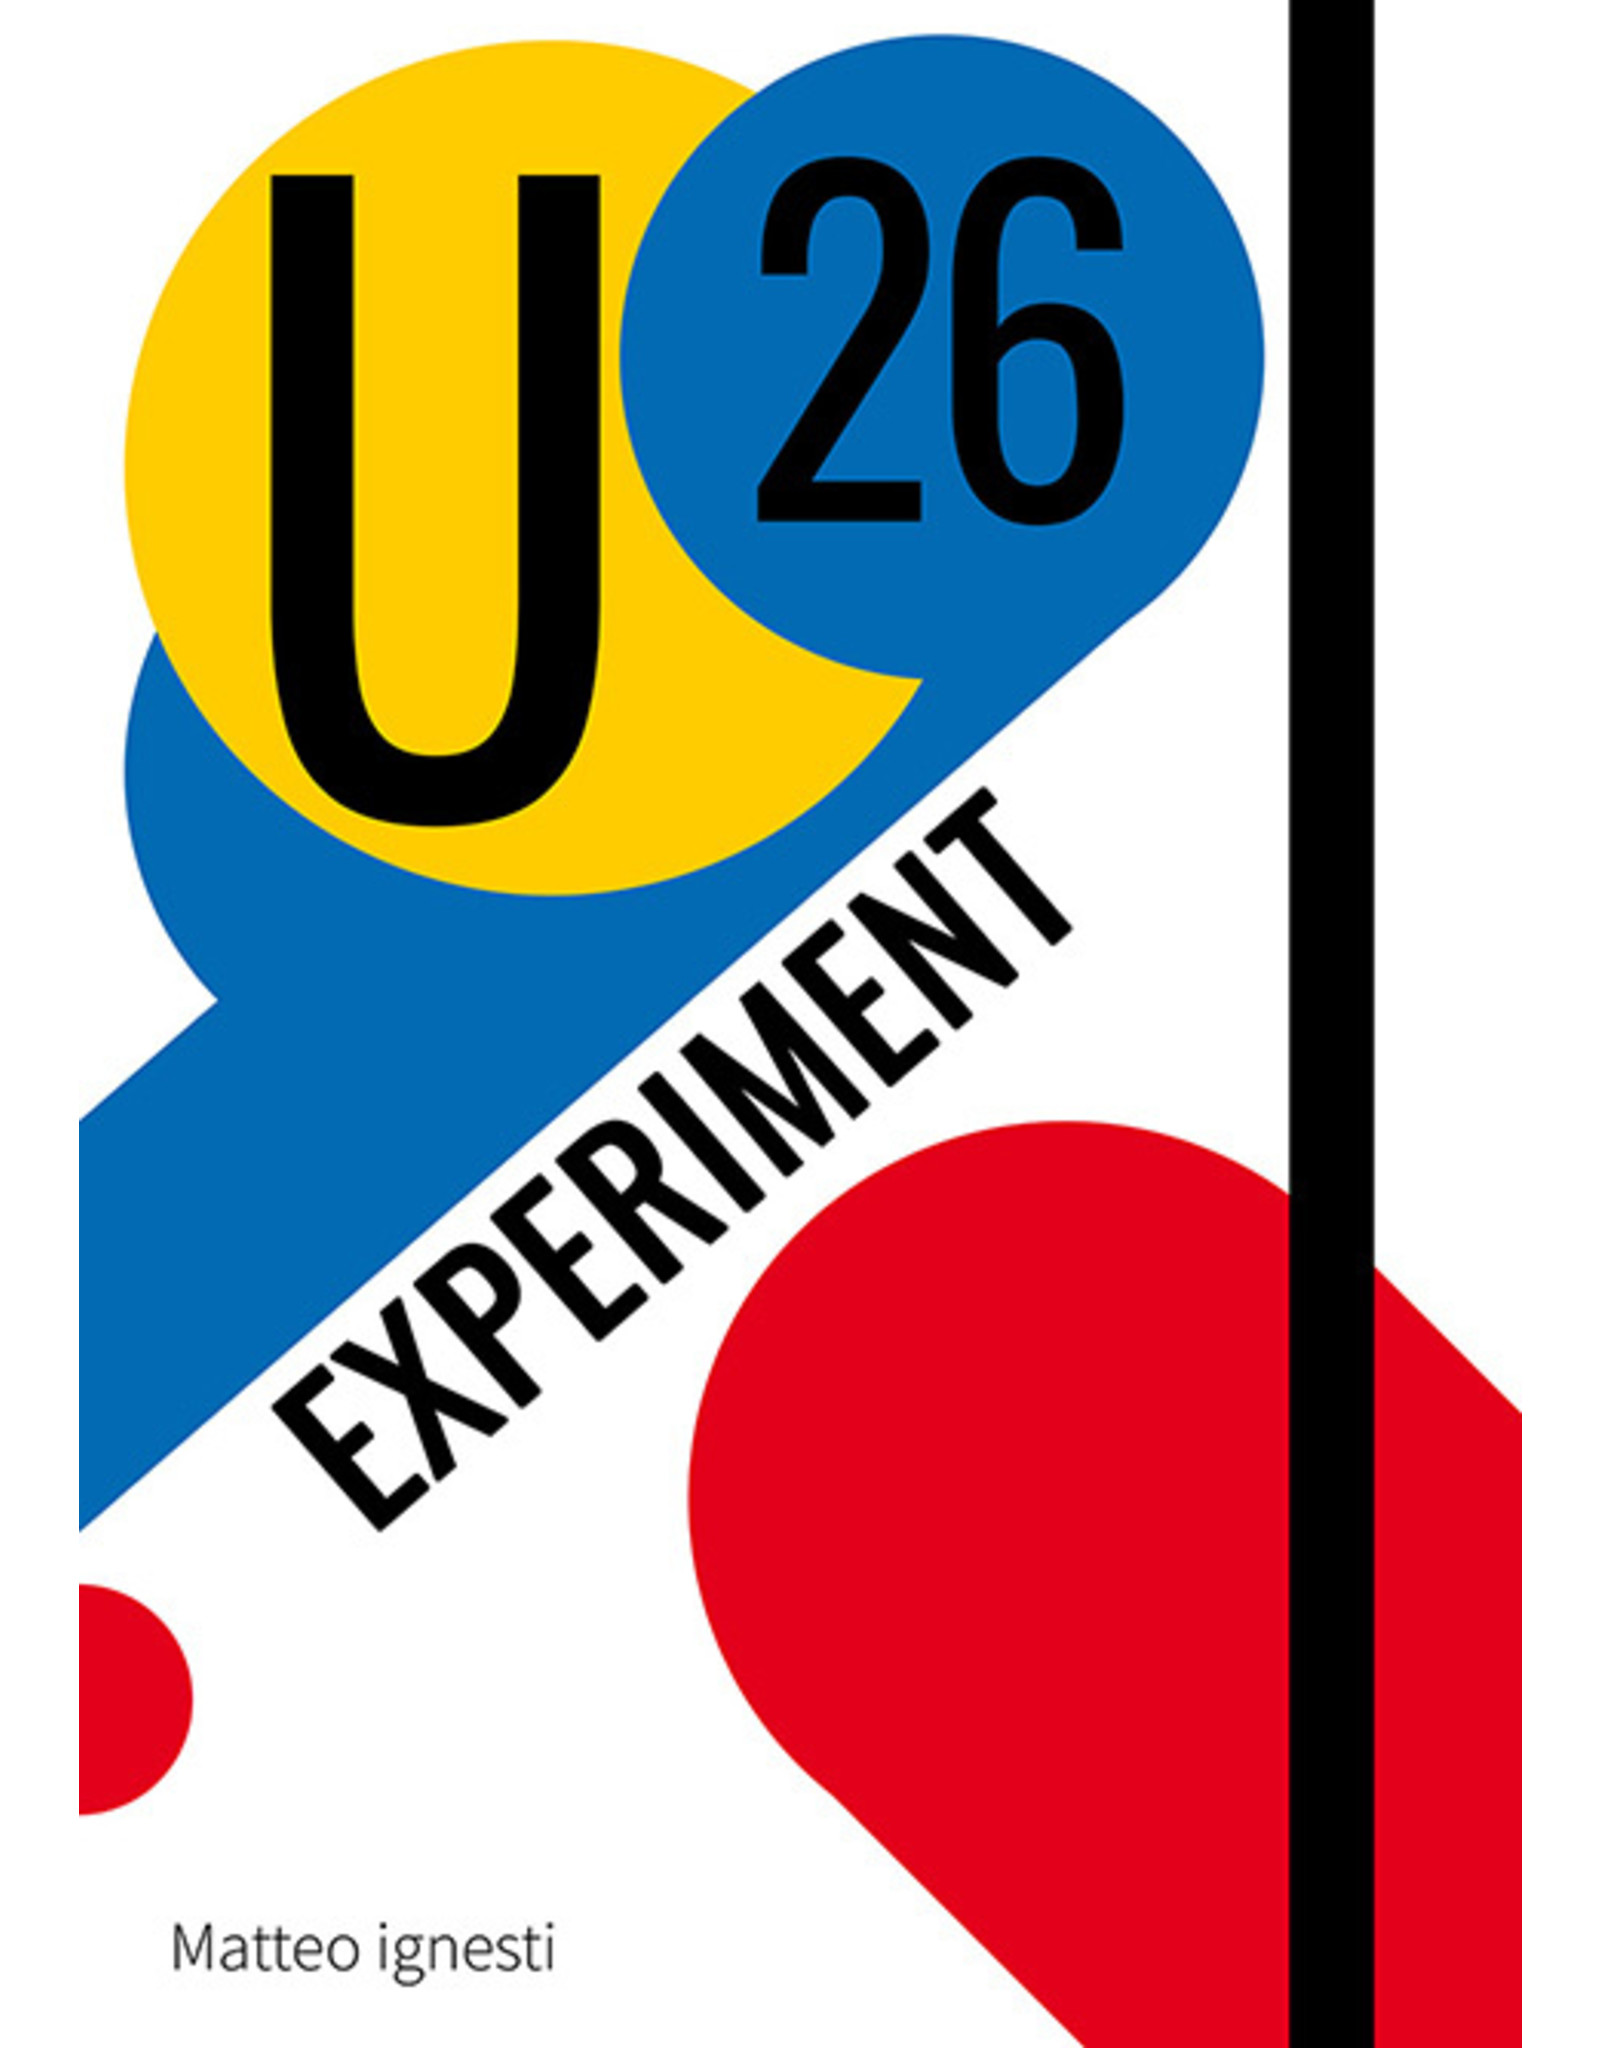 U26 Experiment